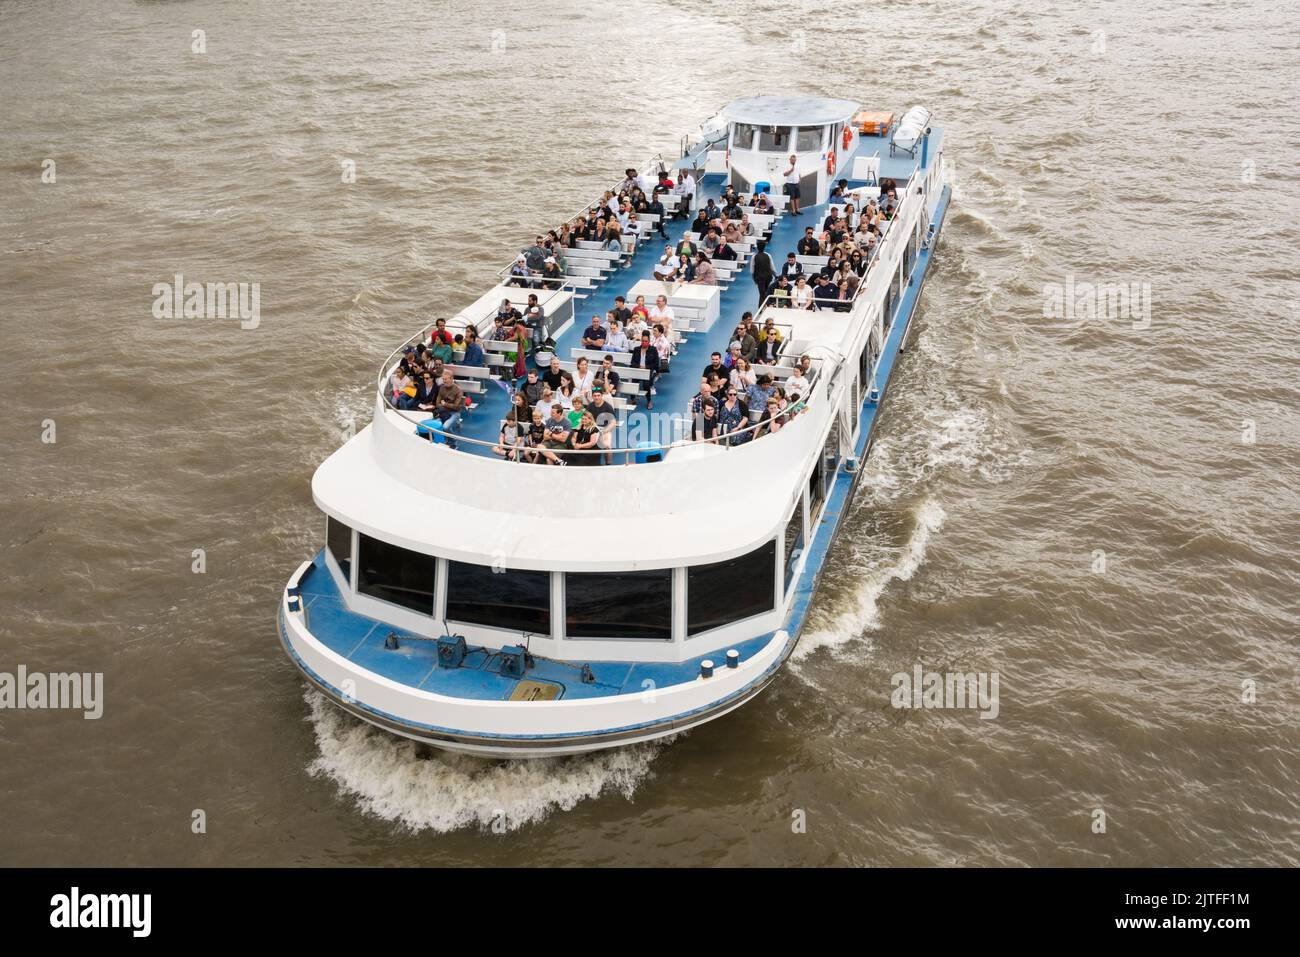 Primer plano de los turistas a bordo de un barco de placer en el río Támesis, Londres, Inglaterra, Reino Unido Foto de stock